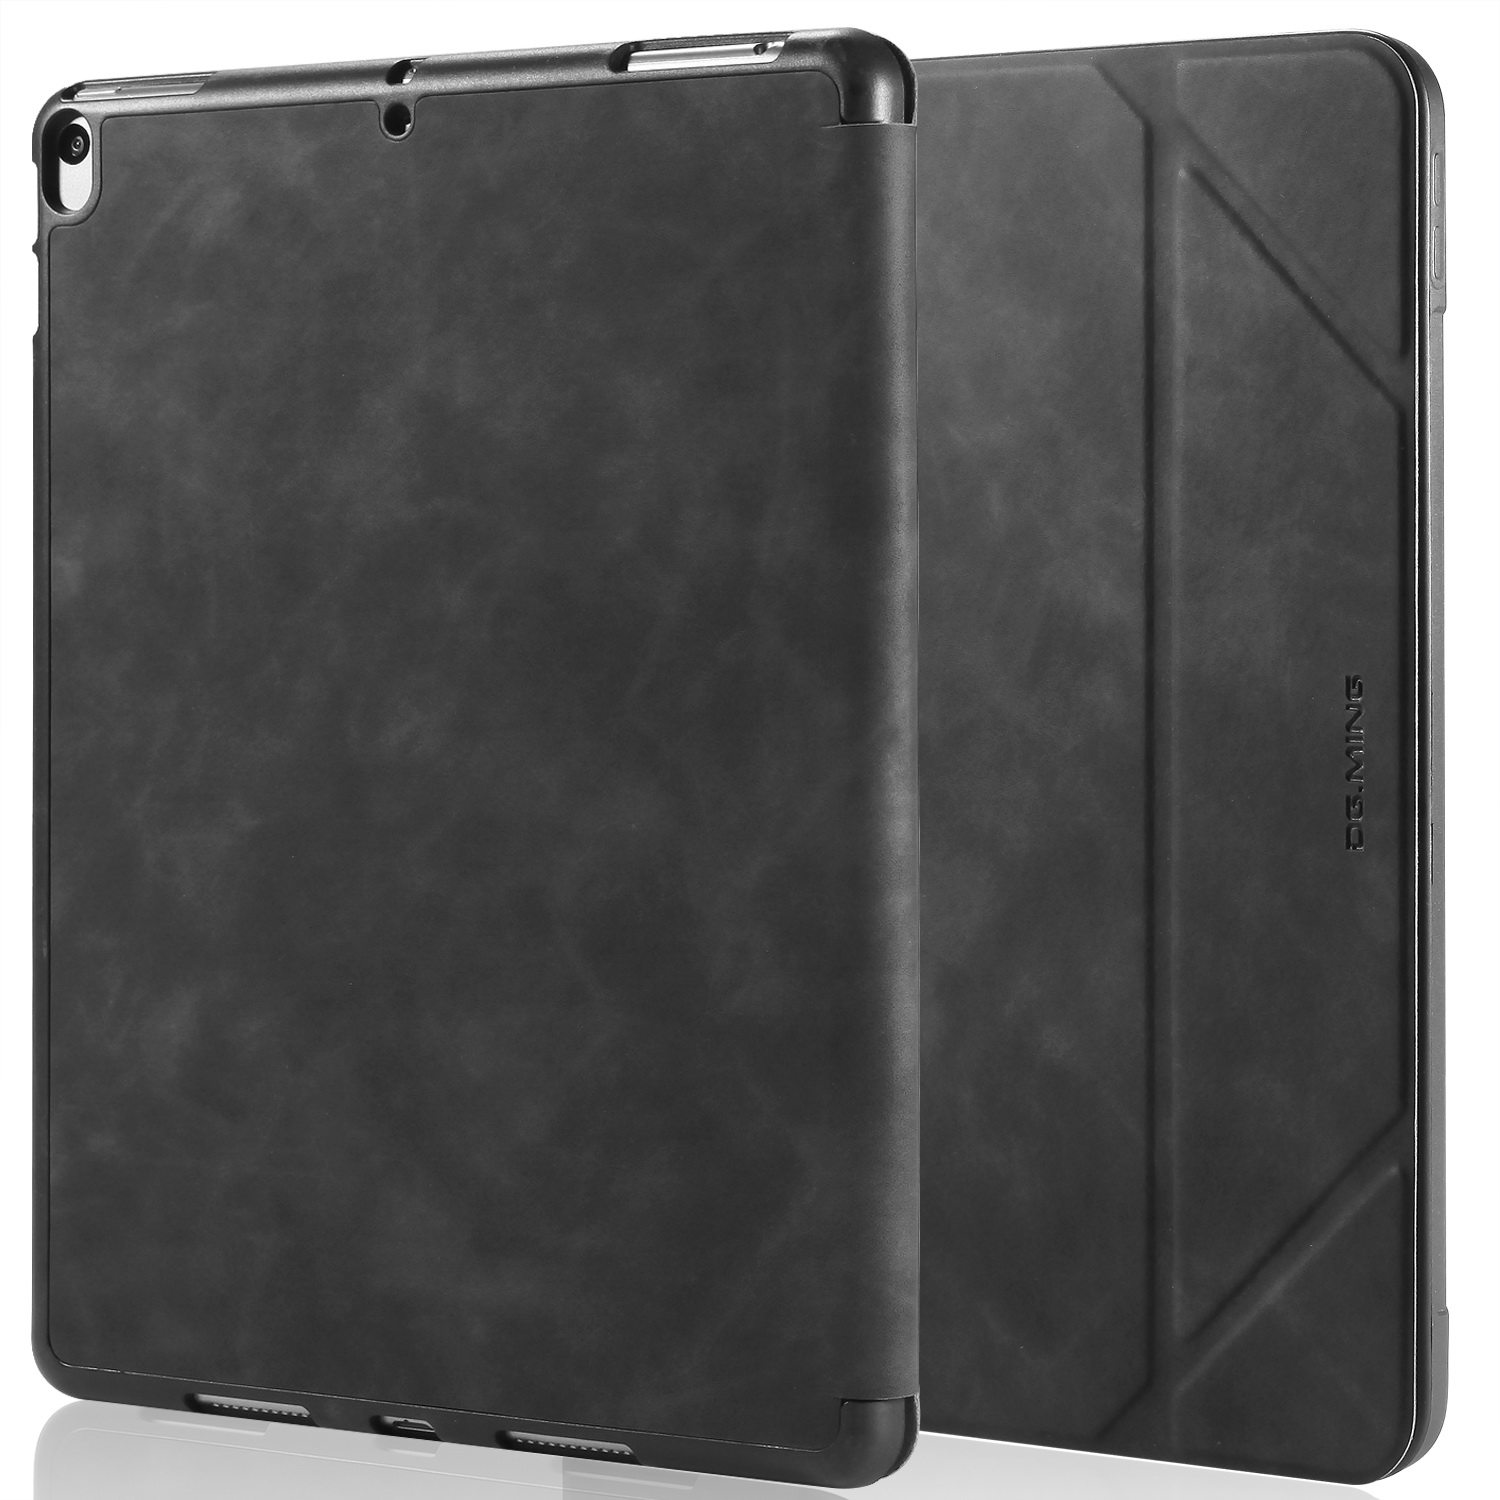 DG.MING Retro Style fodral till iPad Pro 10.5/iPad Air 3, svart